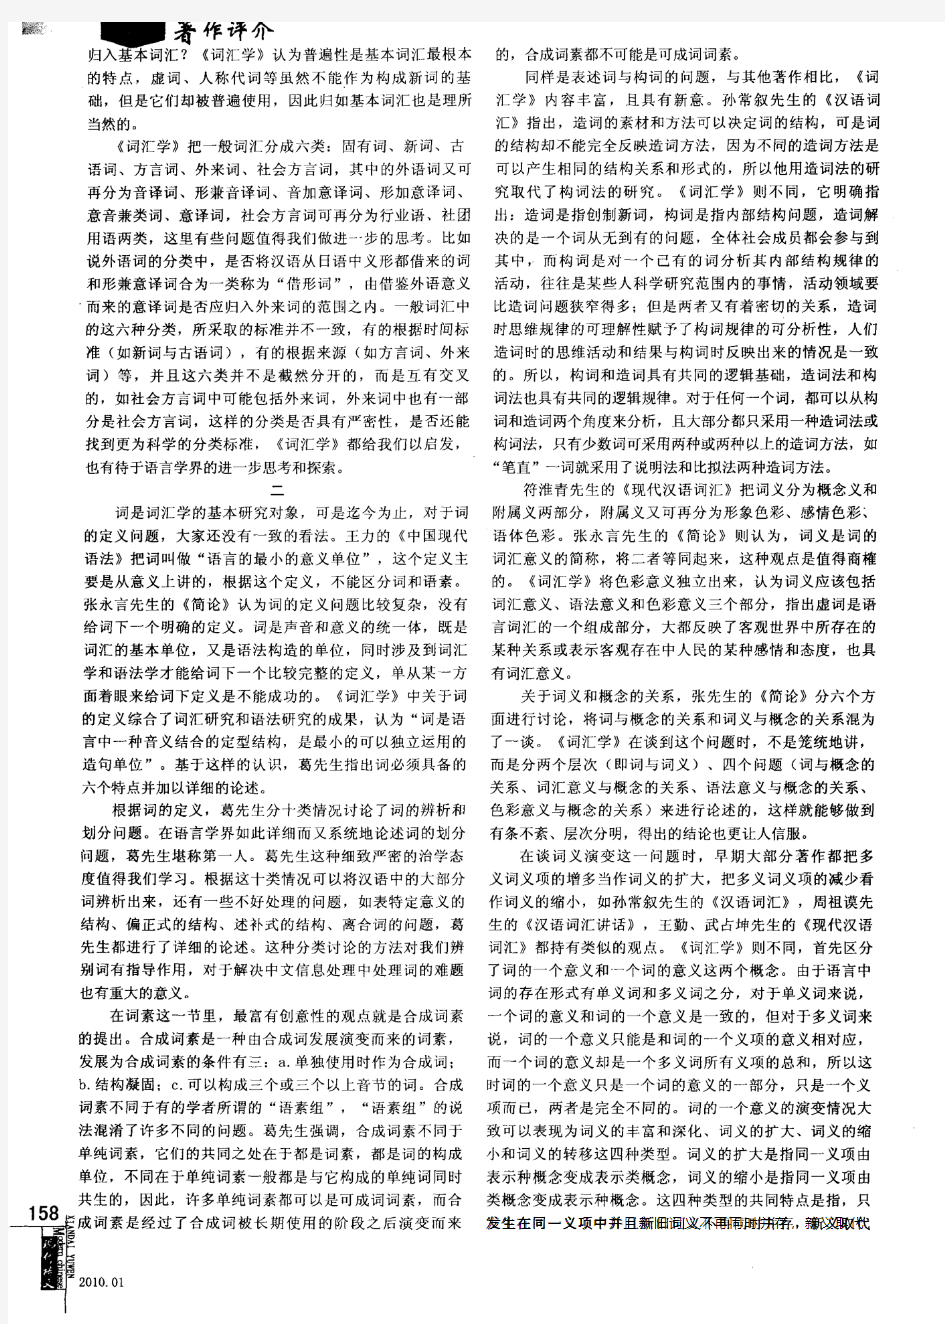 关于汉语词汇理论研究相关问题的思考——《现代汉语词汇学》读后